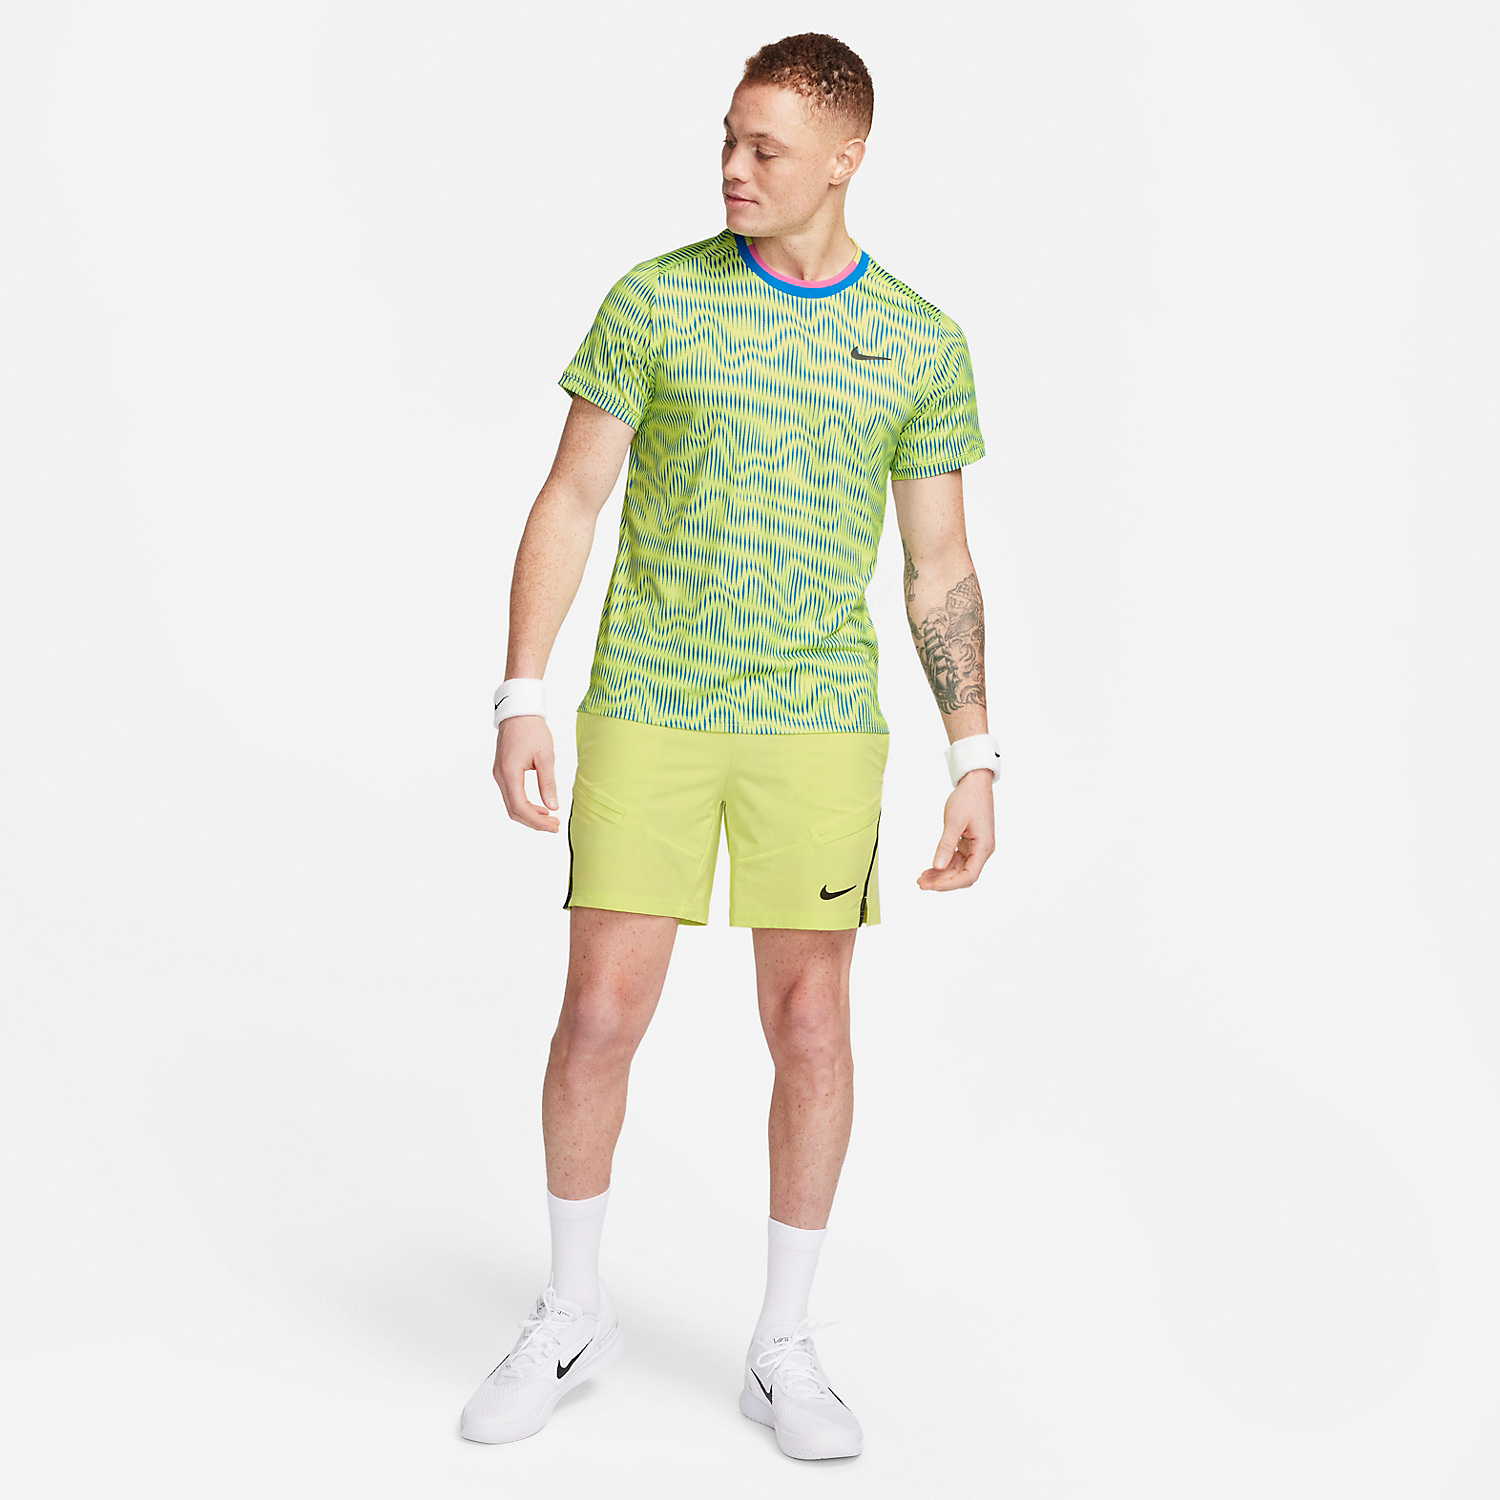 Nike Dri-FIT Advantage T-Shirt - Light Lemon Twist/Light Photo Blue/Black